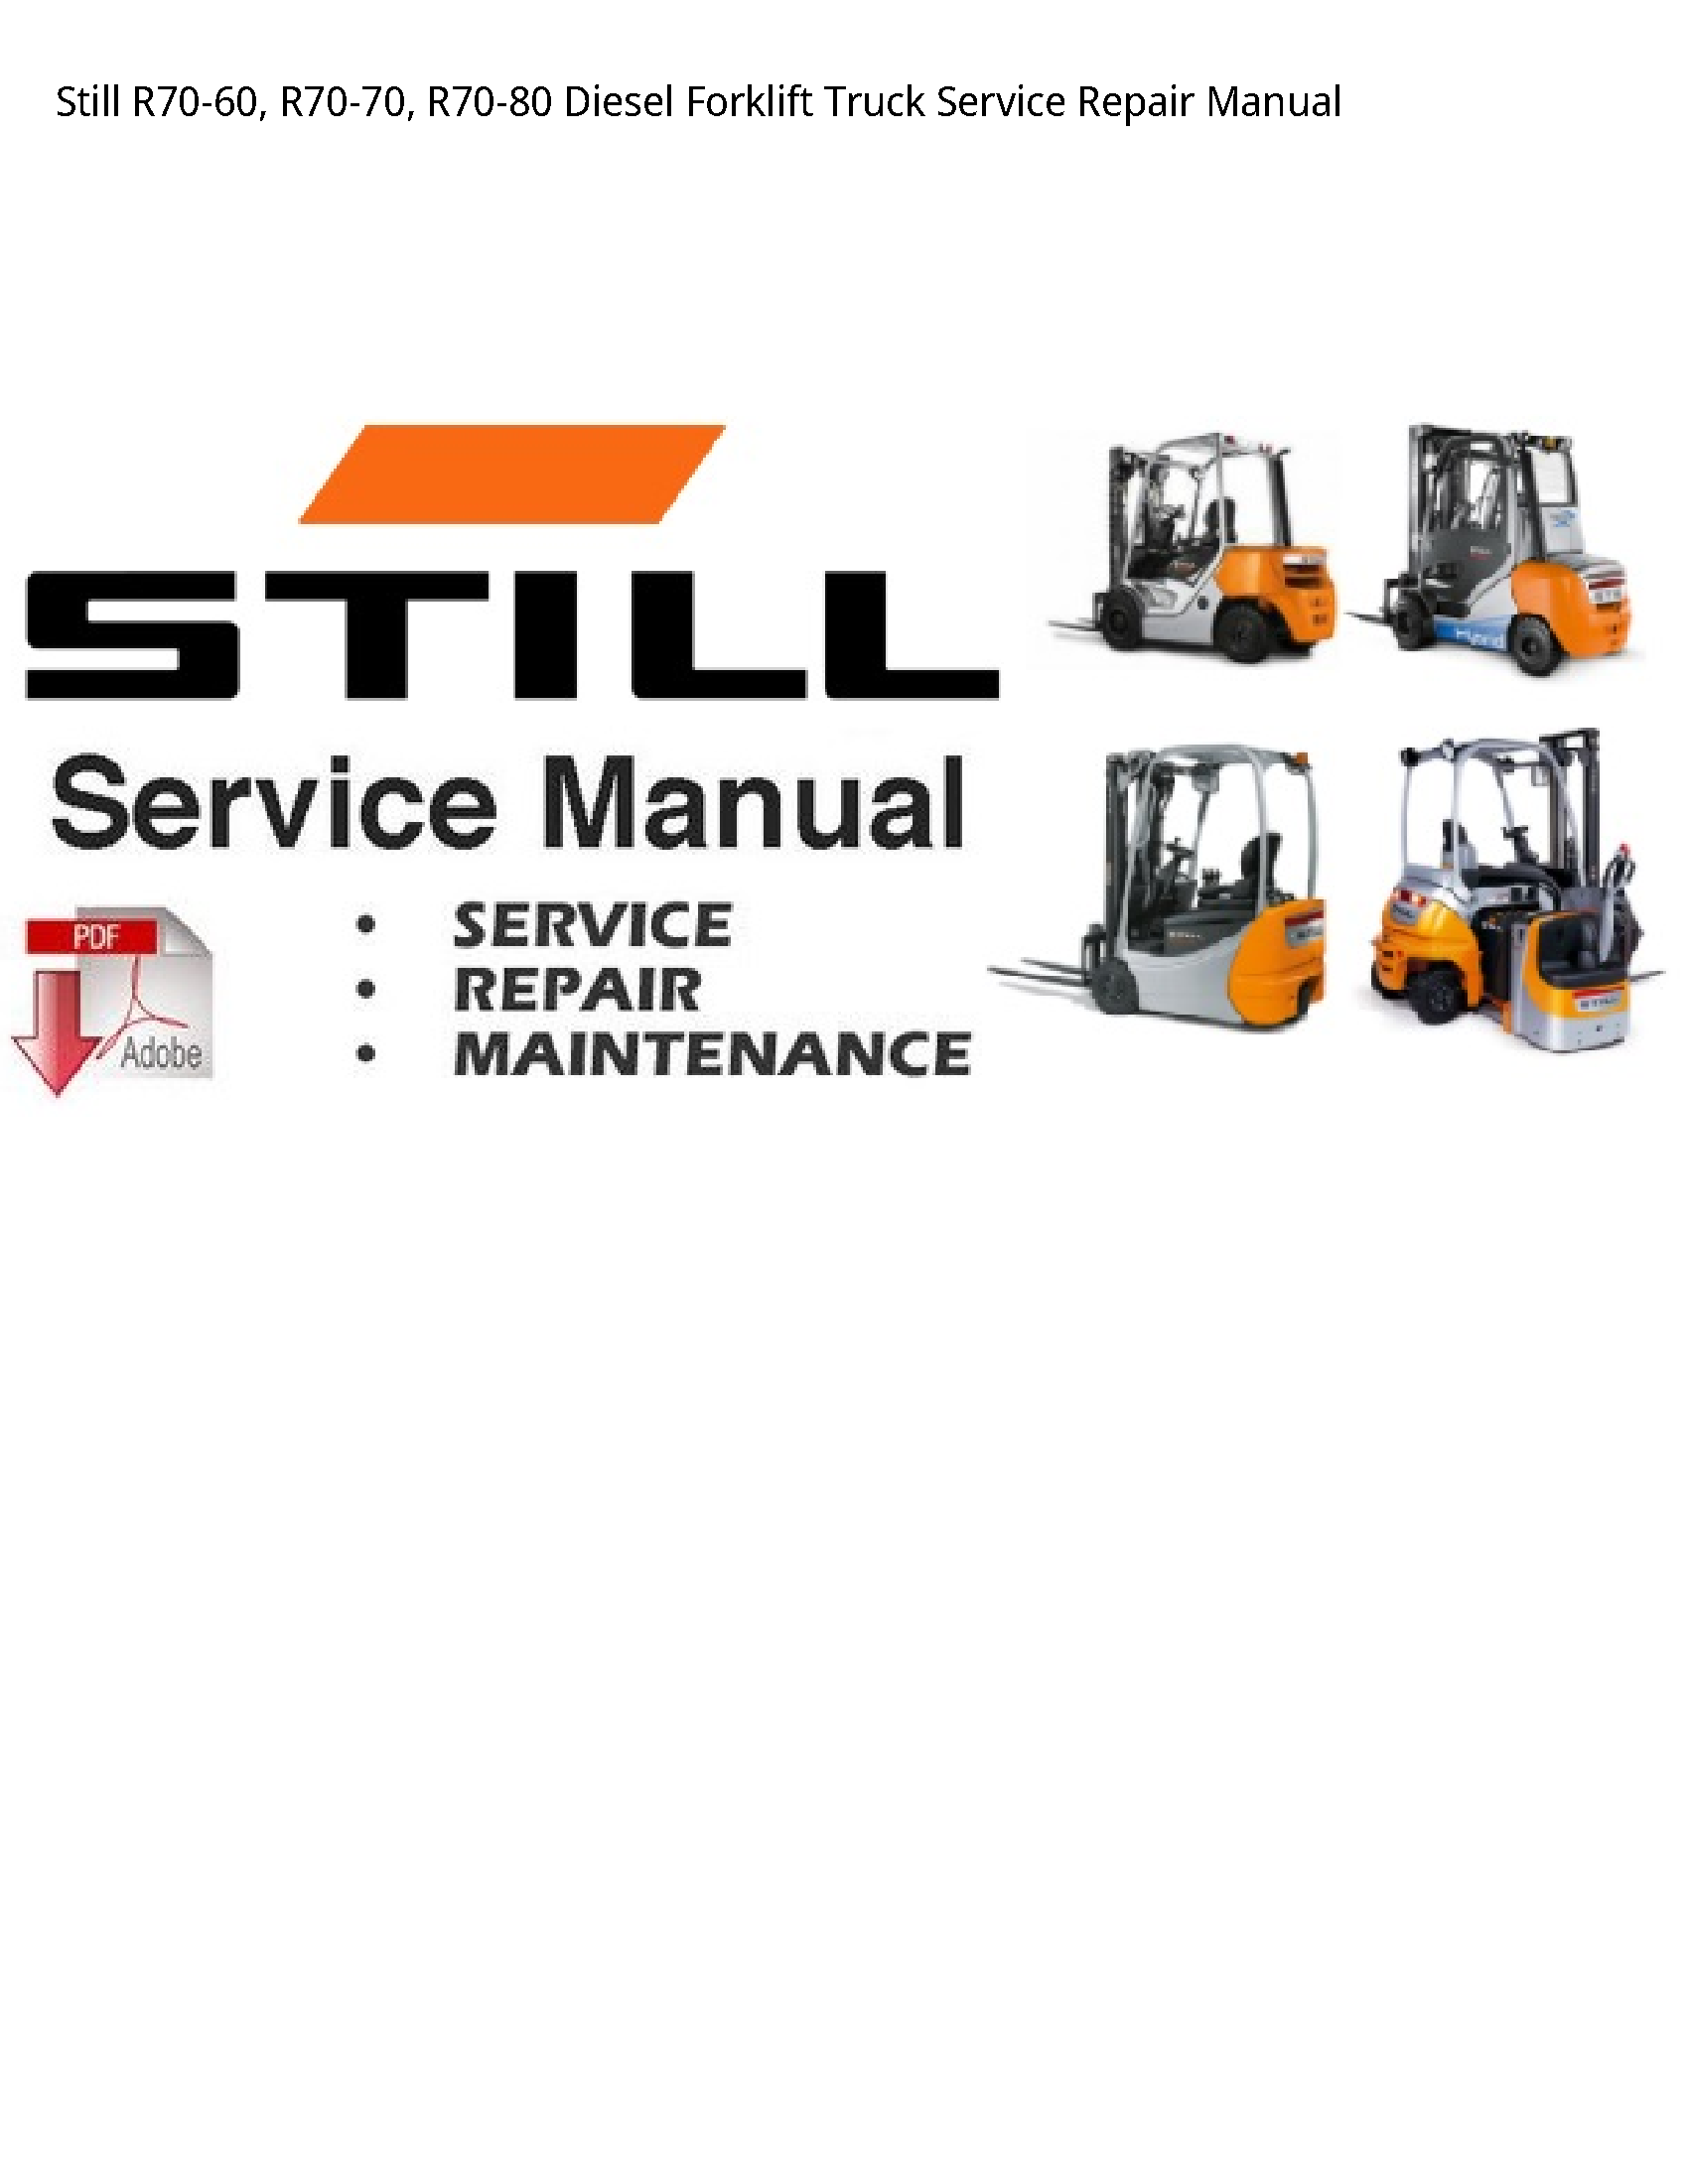 Still R70-60 Diesel Forklift Truck manual